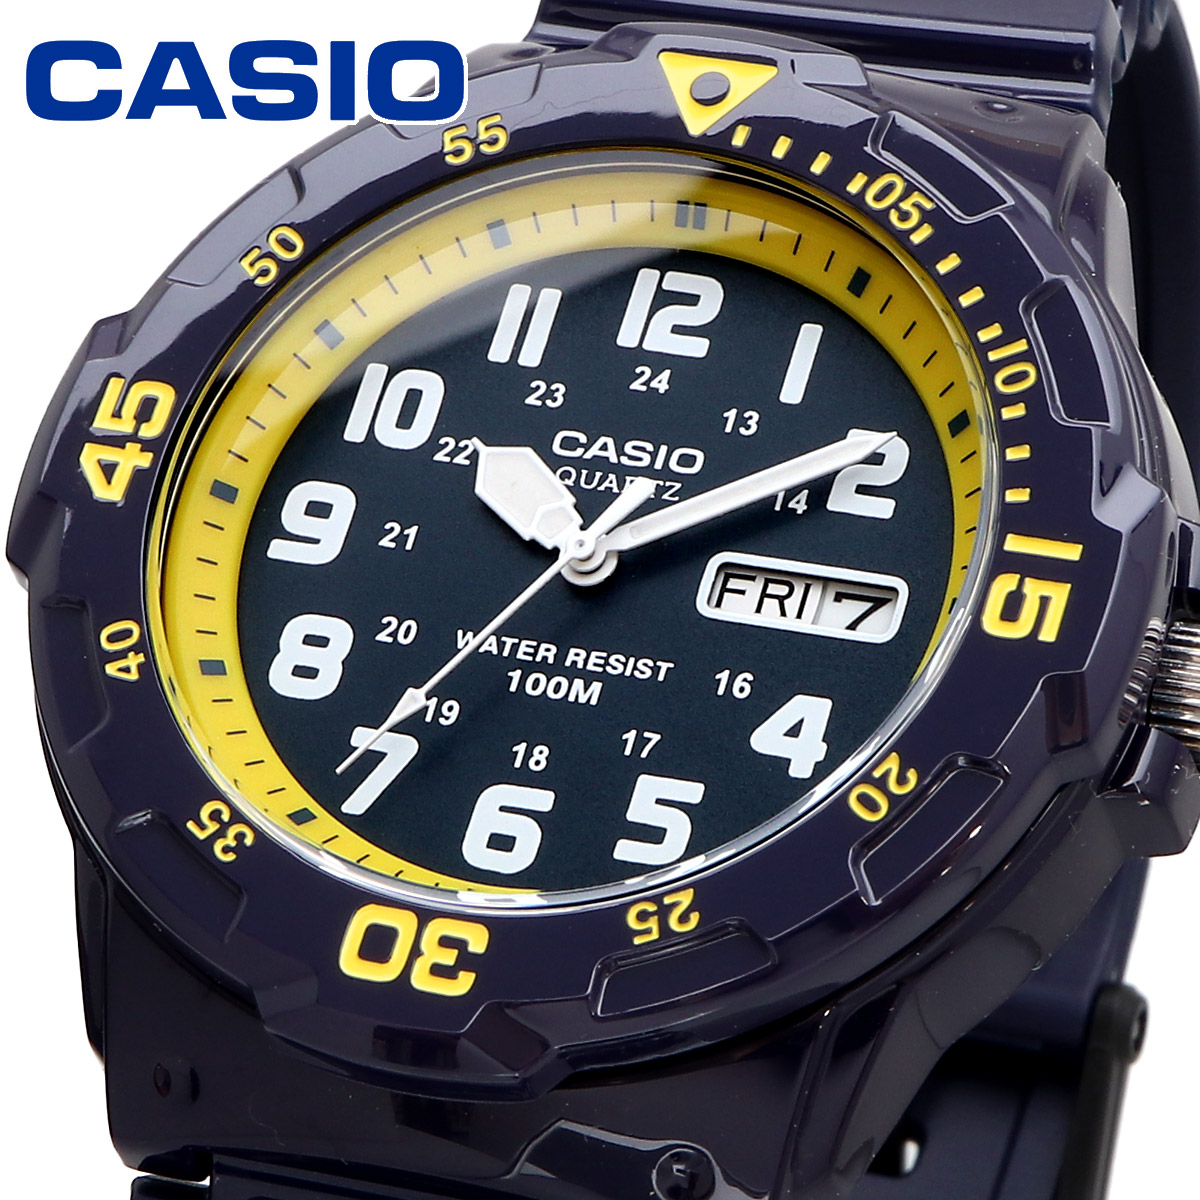 CASIO カシオ 腕時計 メンズ チープカシオ チプカシ 海外モデル アナログ  MRW-200HC-2BV